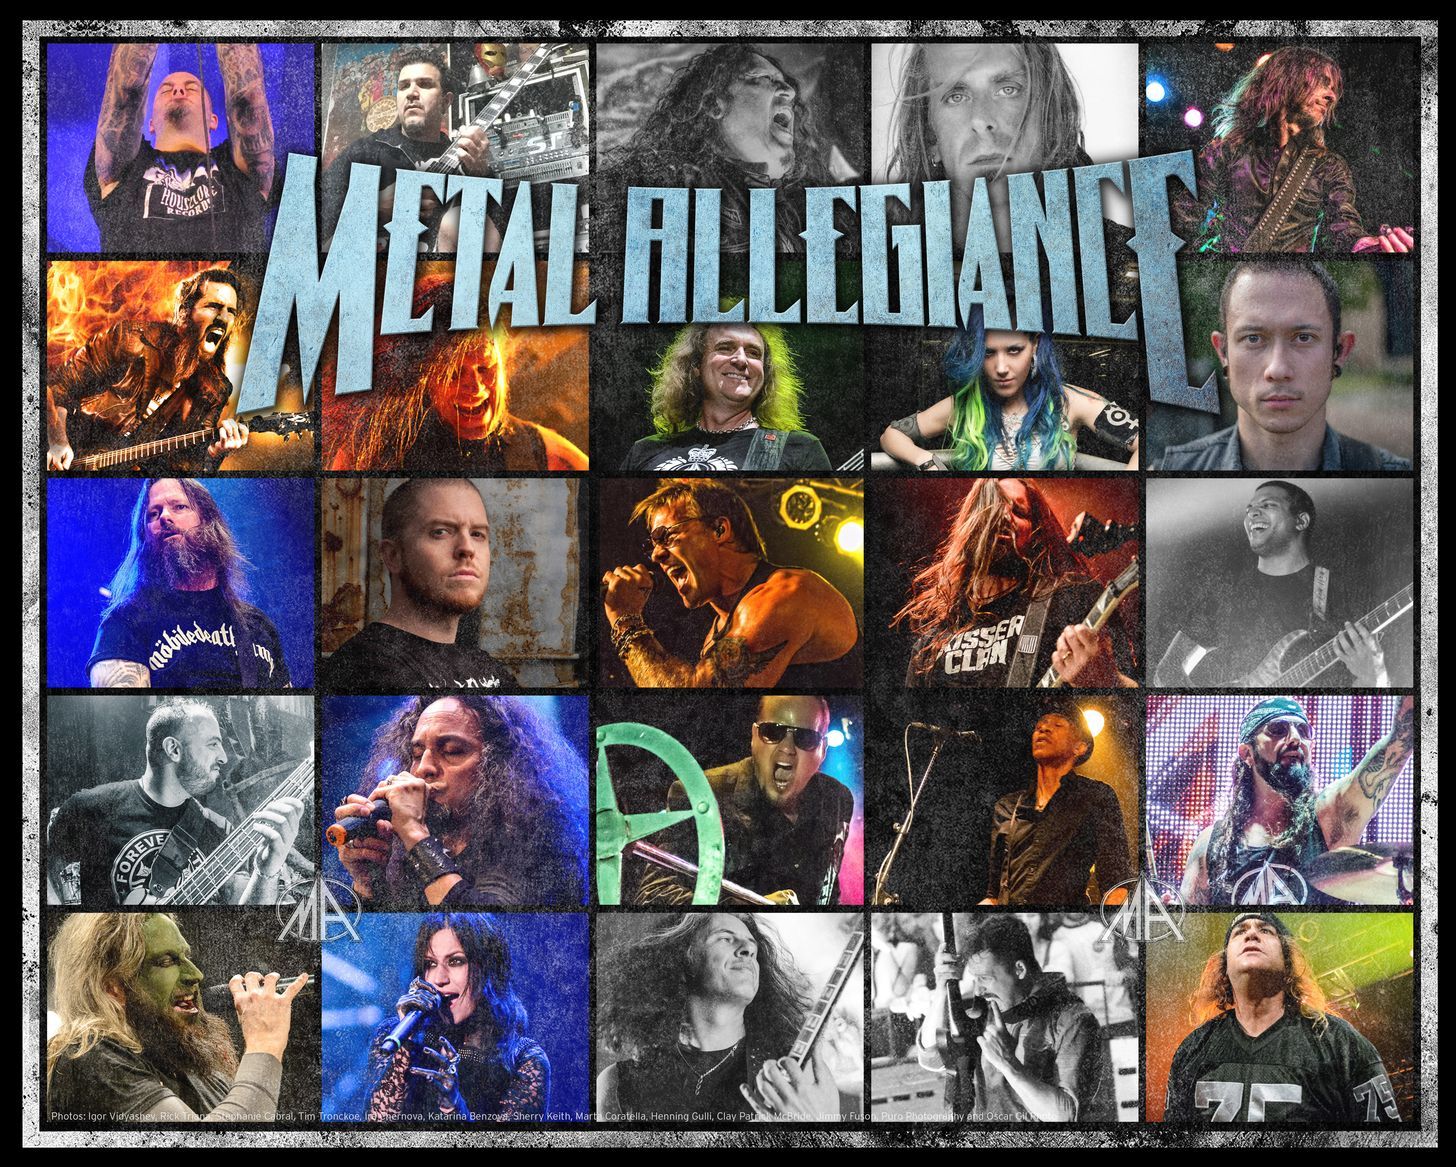 Metal Allegiance: 'Gift Of Pain'-Video mit Randy Blythe ist online